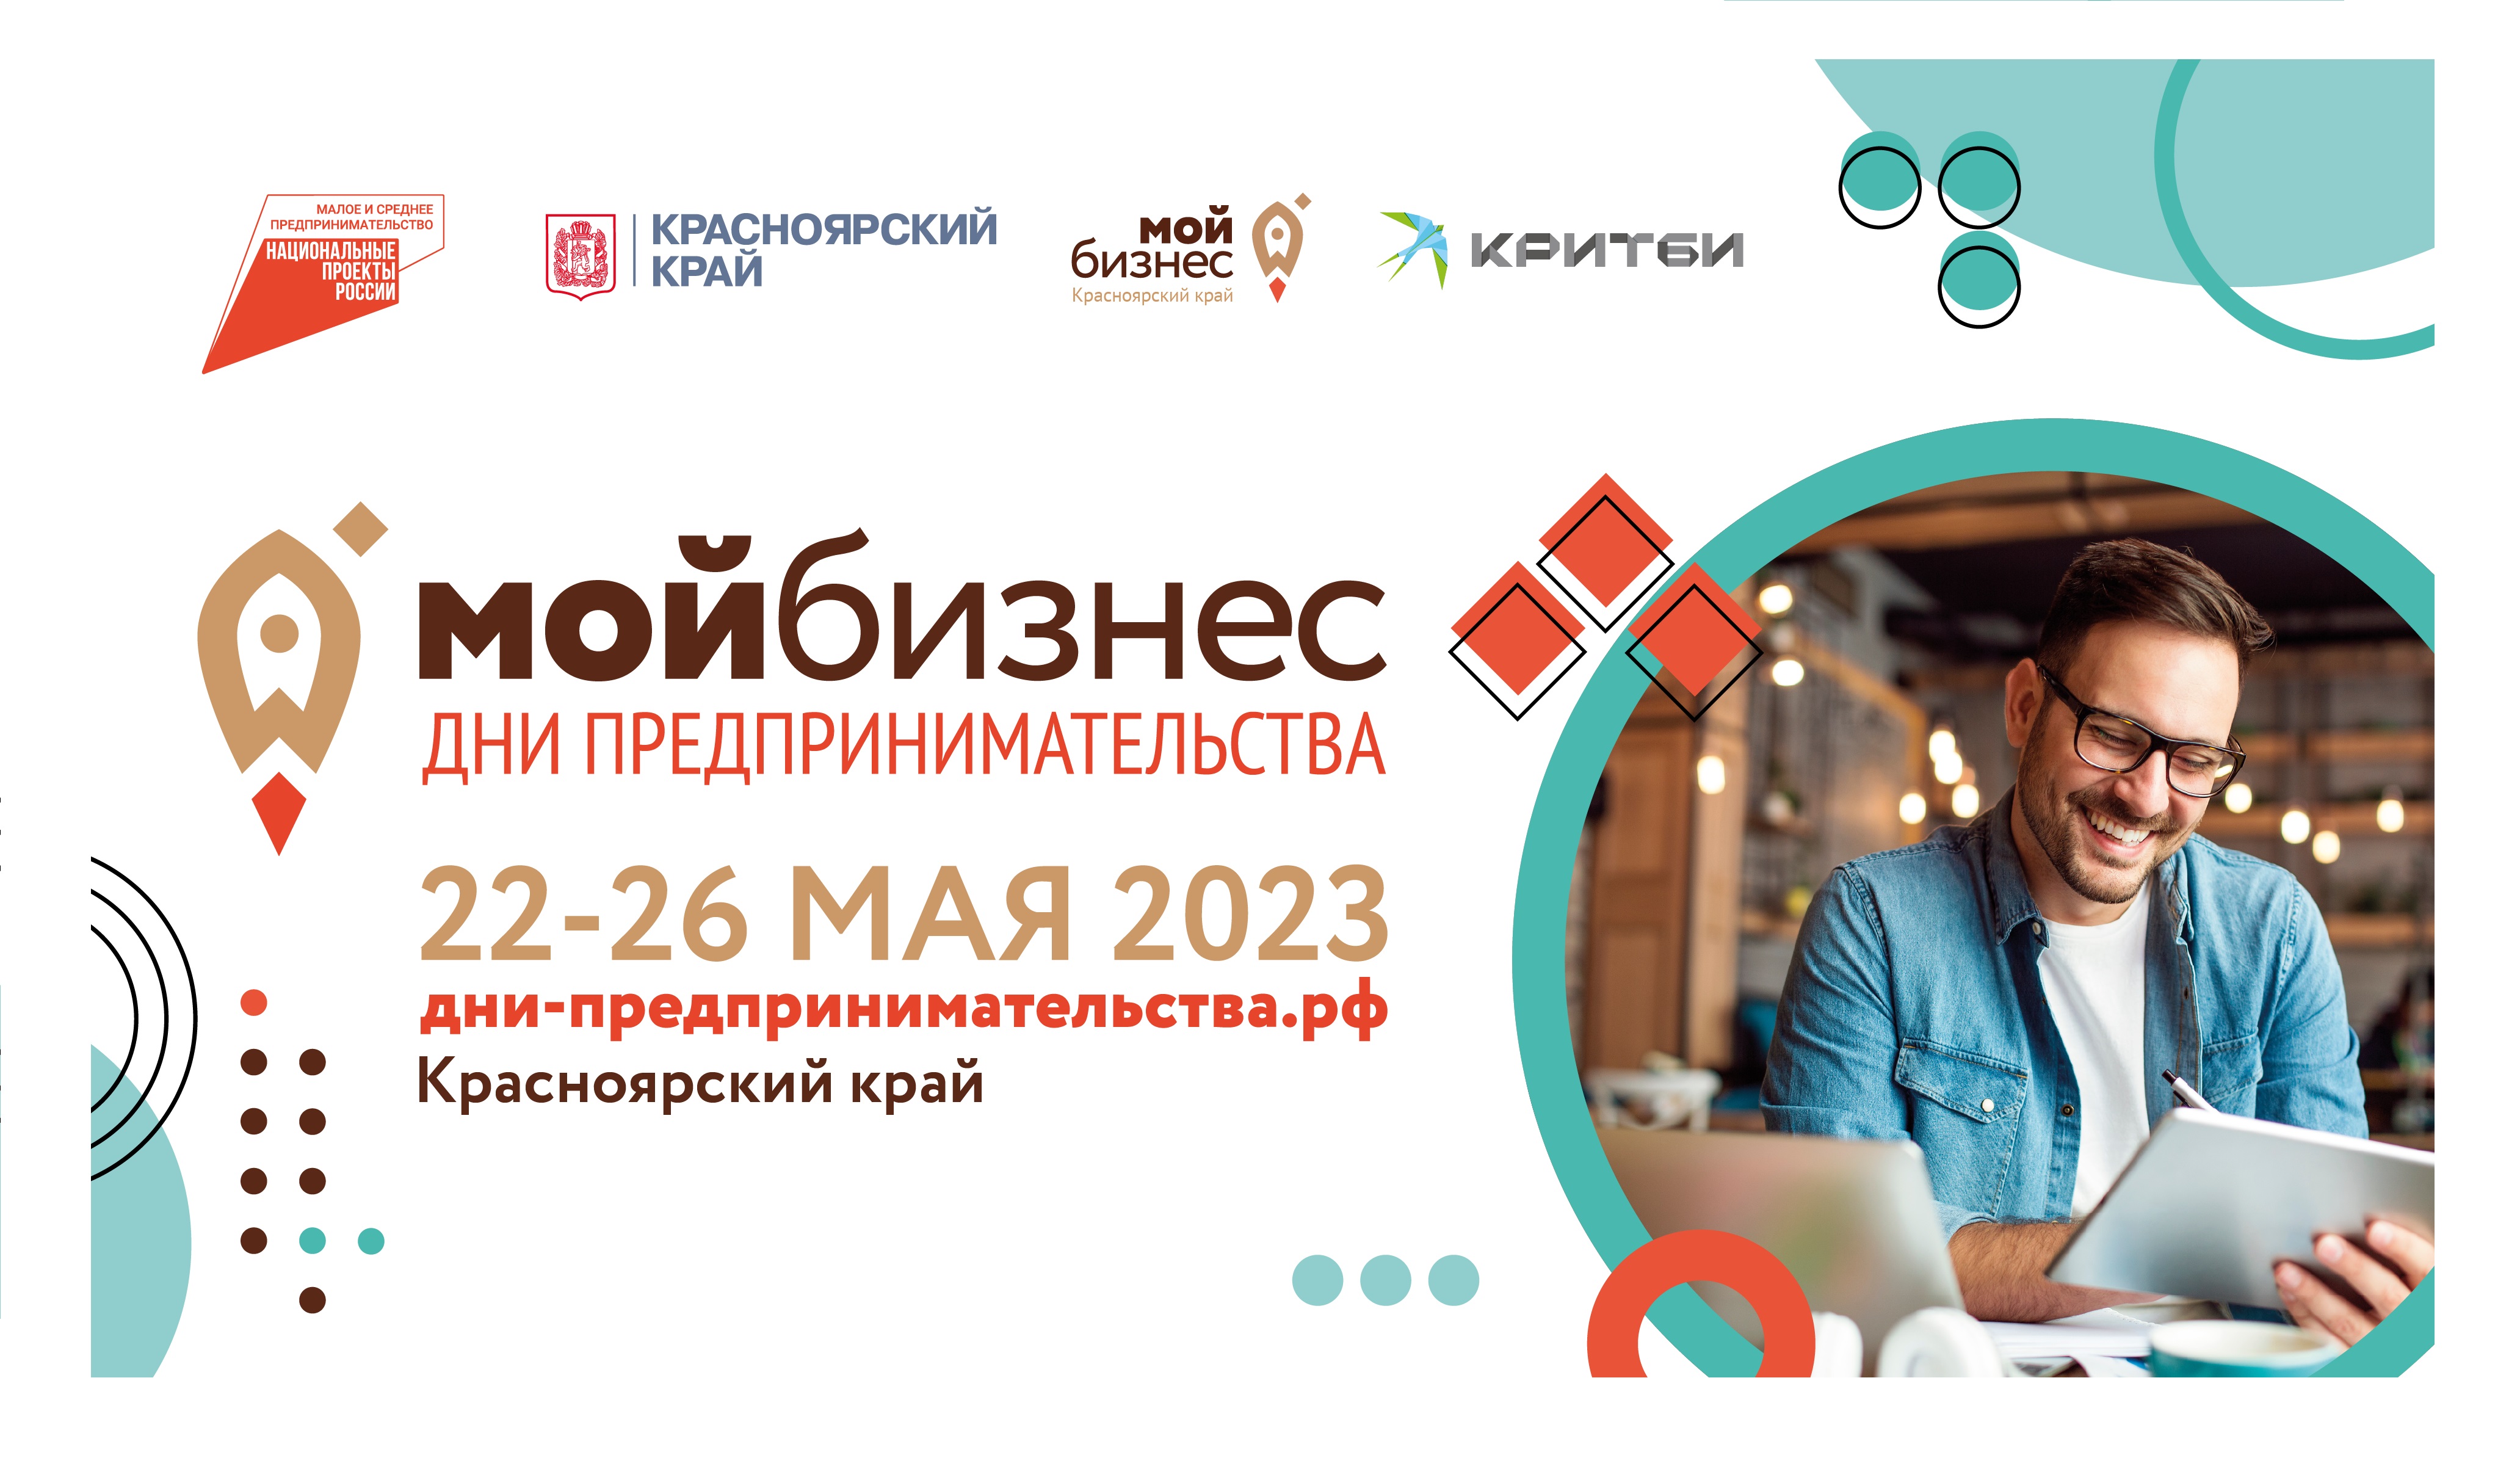 Предпринимателей края приглашают на бизнес-форум 22-26 мая